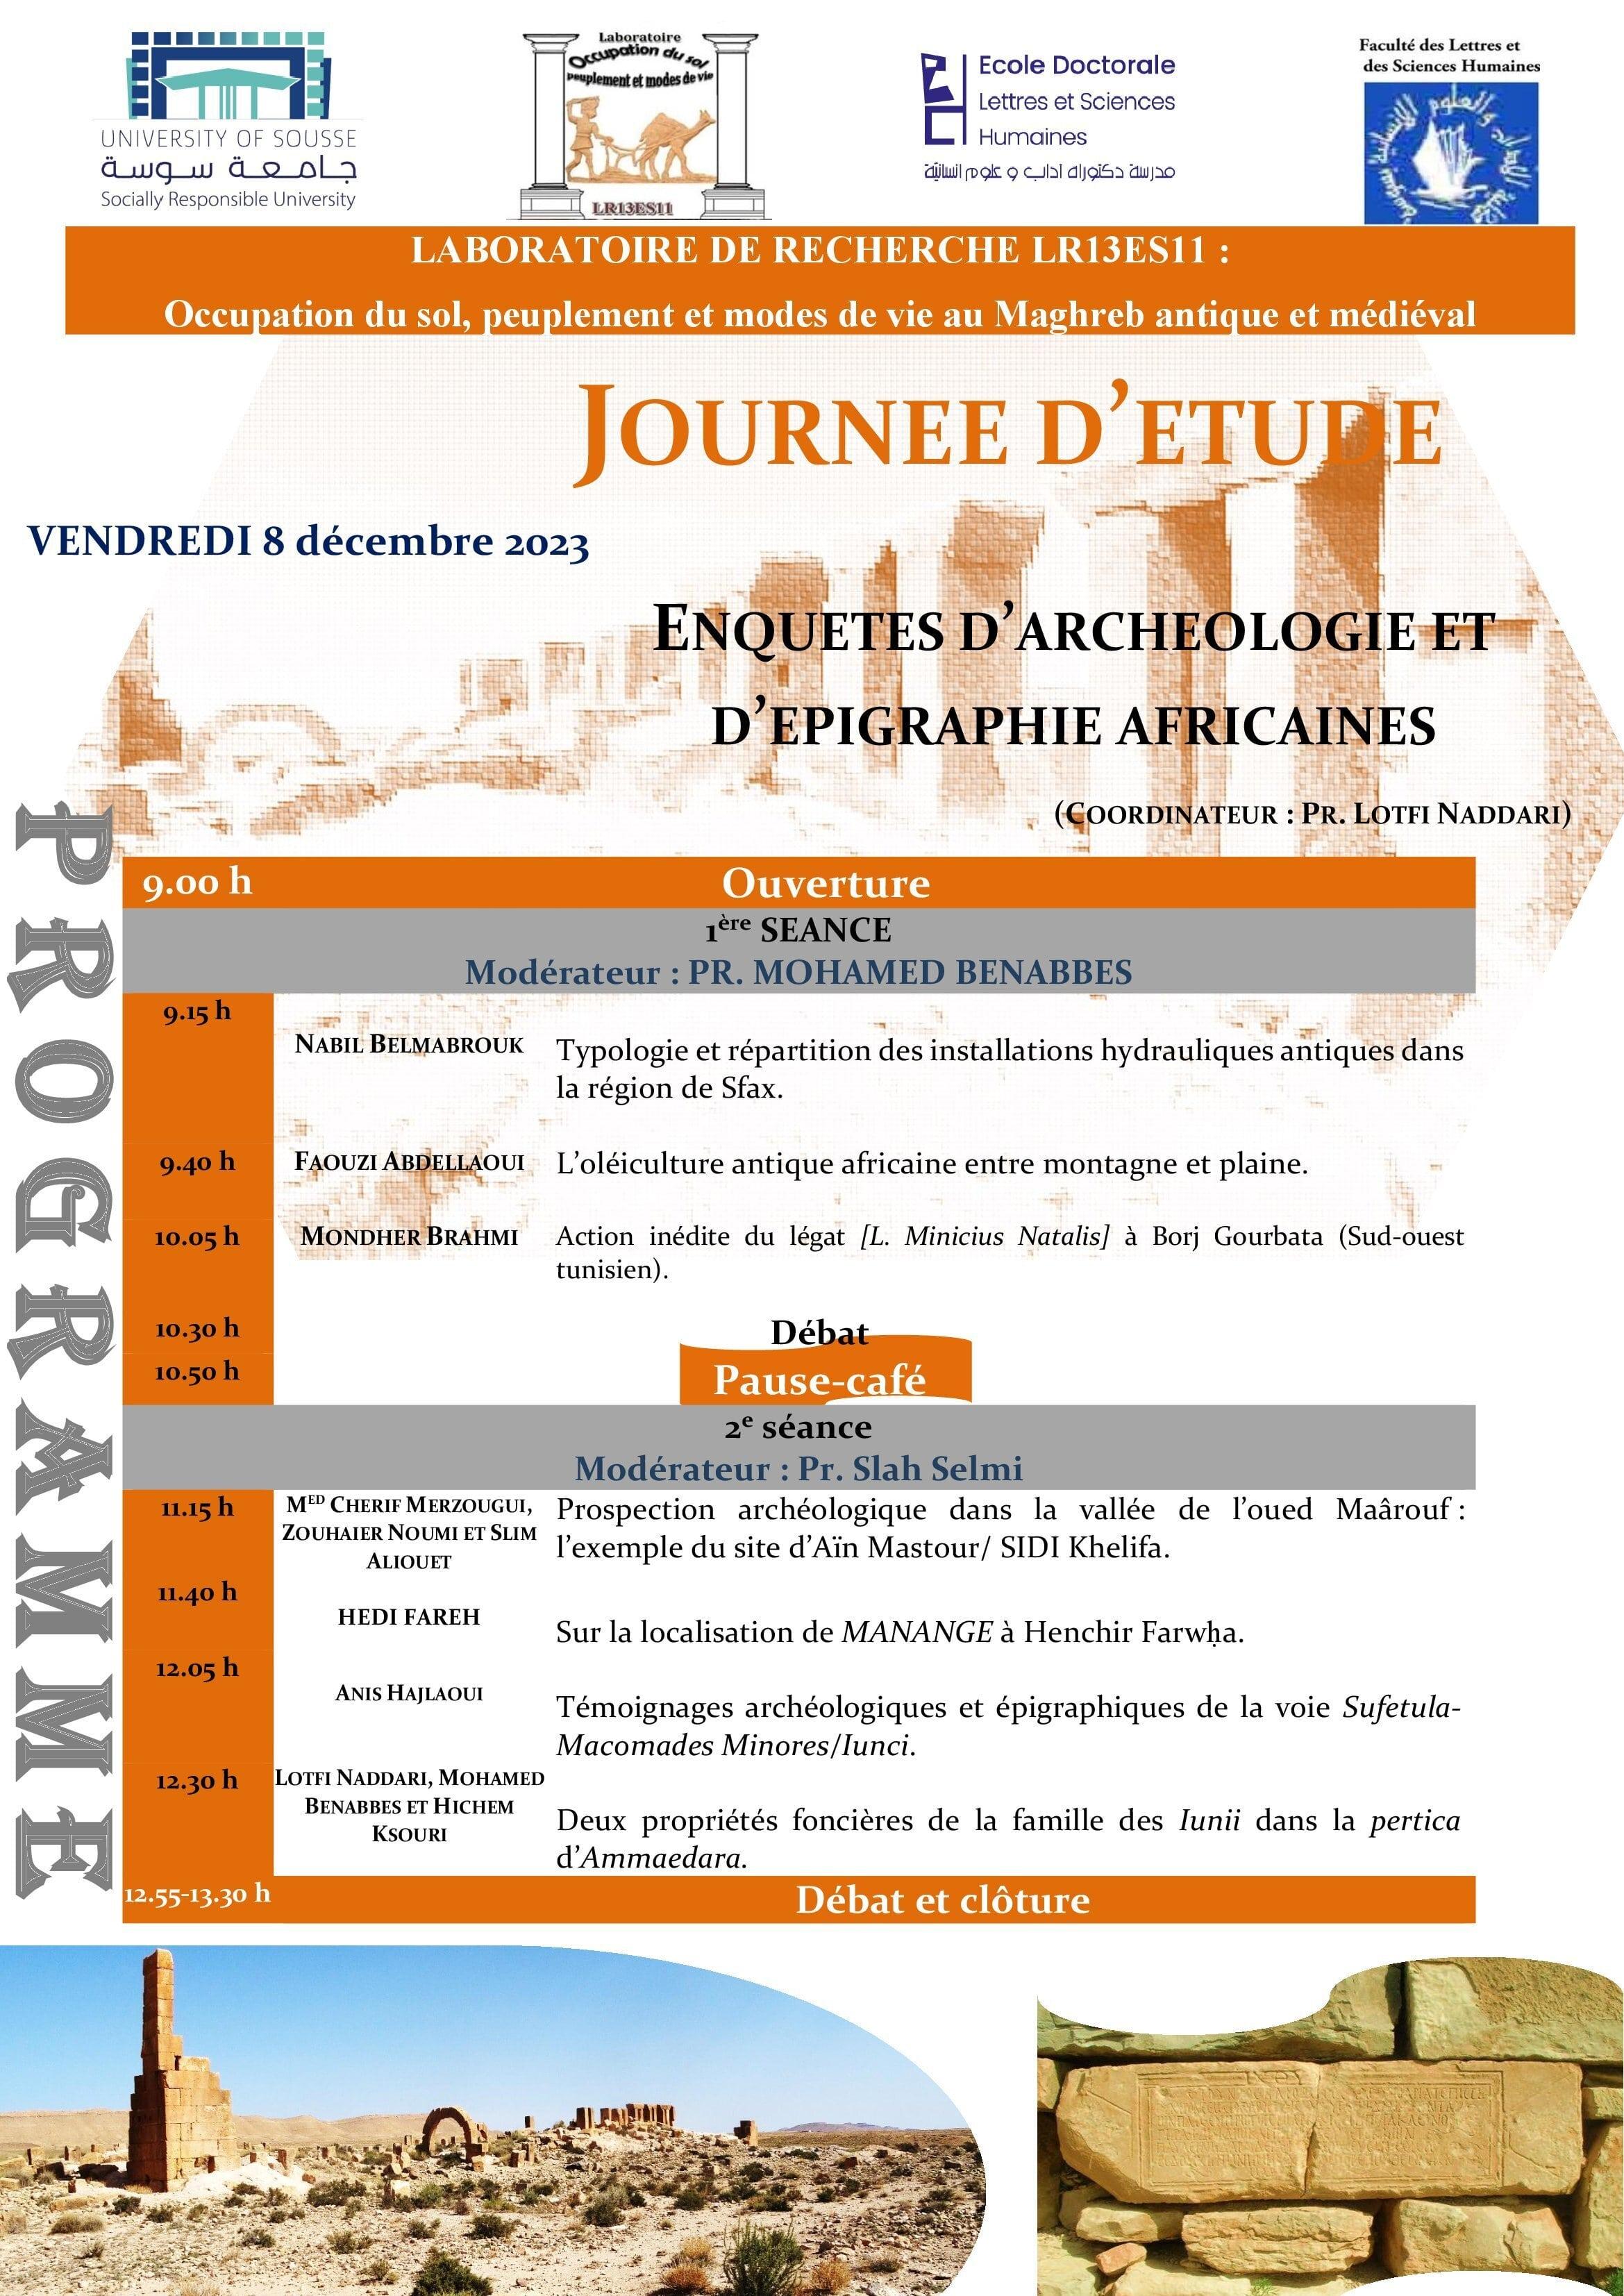 Journée d'étude  "Enquêtes d'archéologie et d'epigraphie africaines"